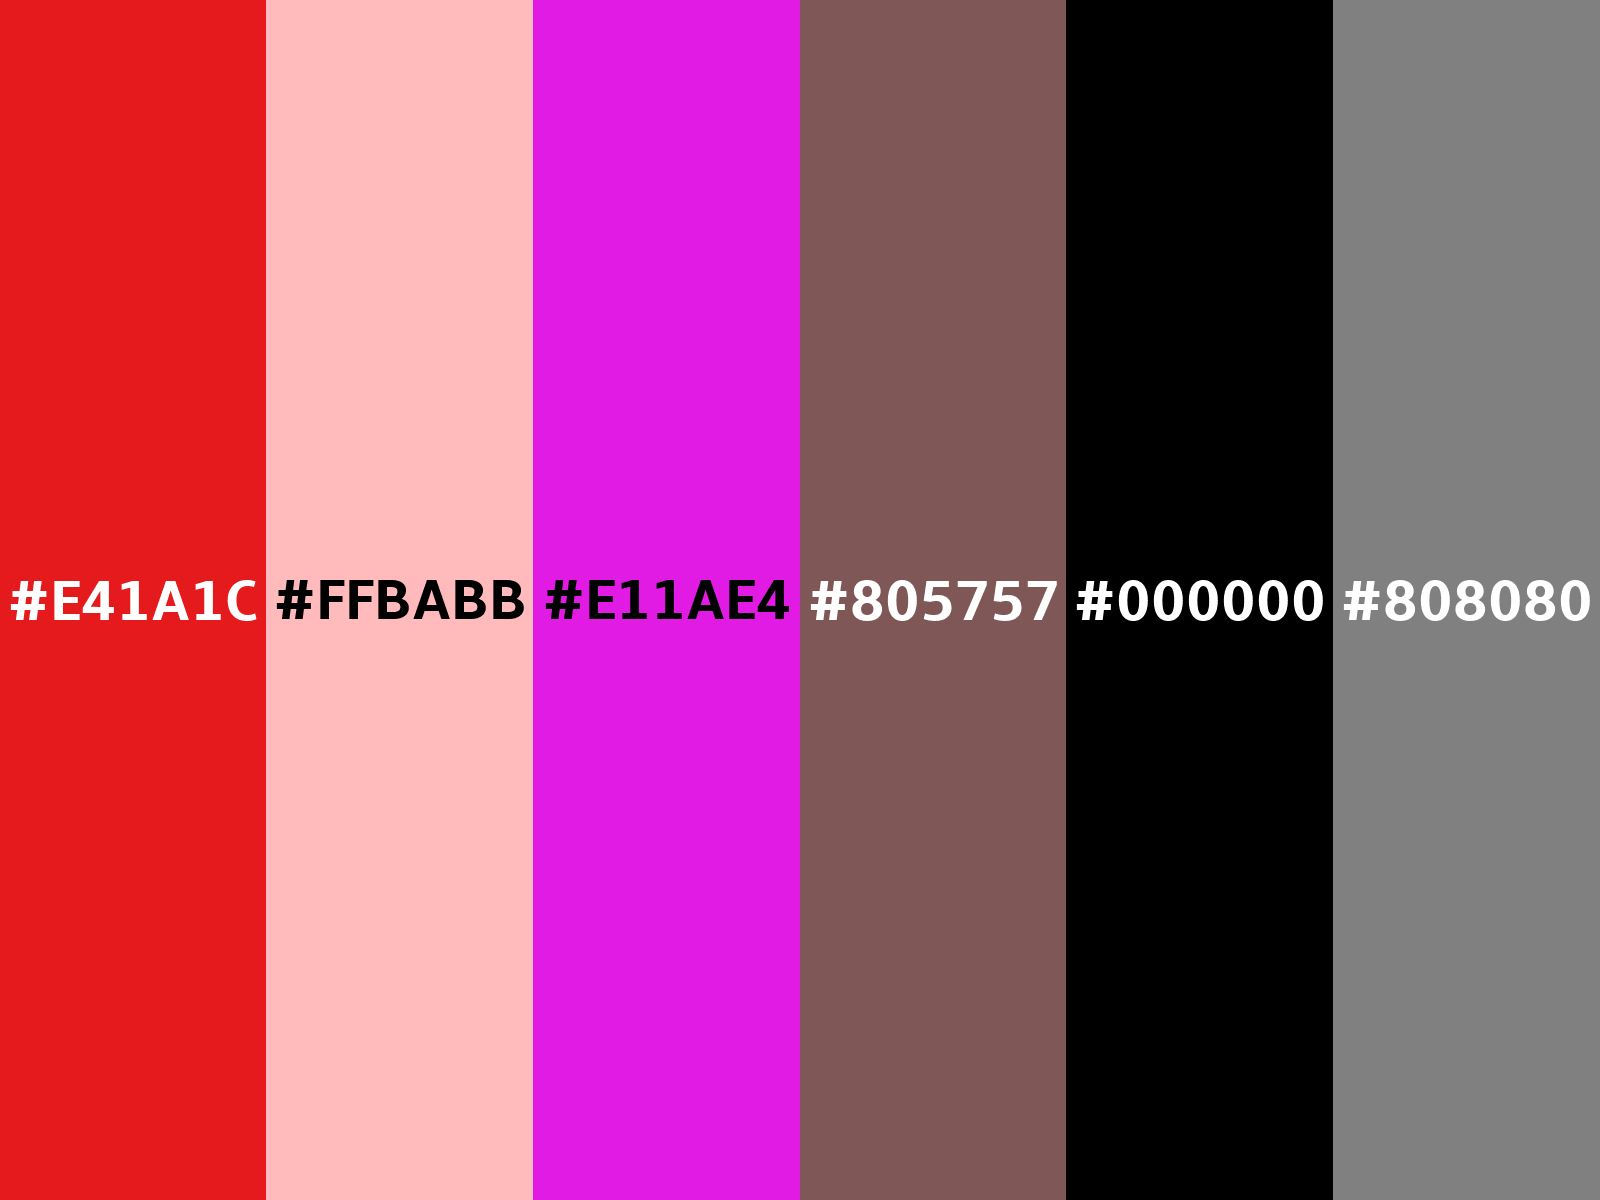 E4F6F8 Hex Color, RGB: 228, 246, 248